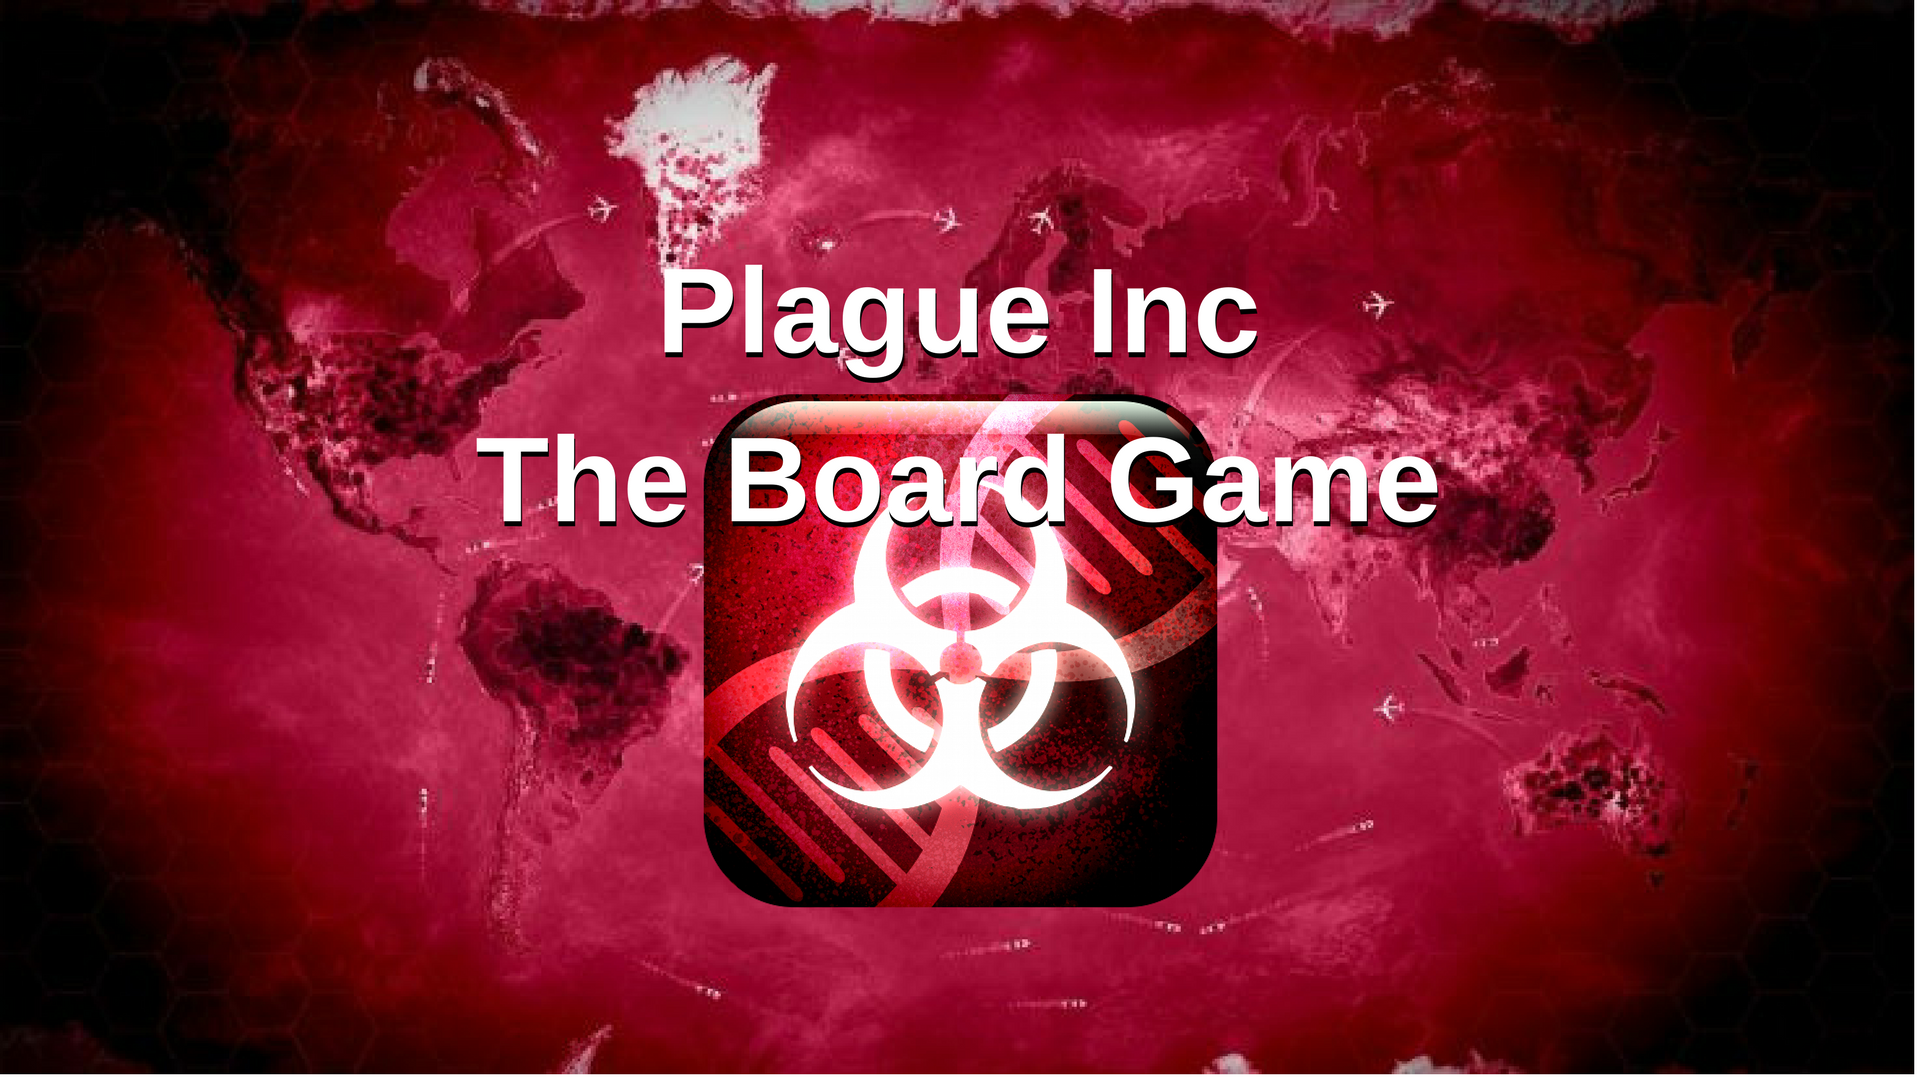 Плагуе Инк. Plague Inc настольная игра. Plague Inc Boarding game. Карточки плагуе Инк. Plague inc андроид премиум версия